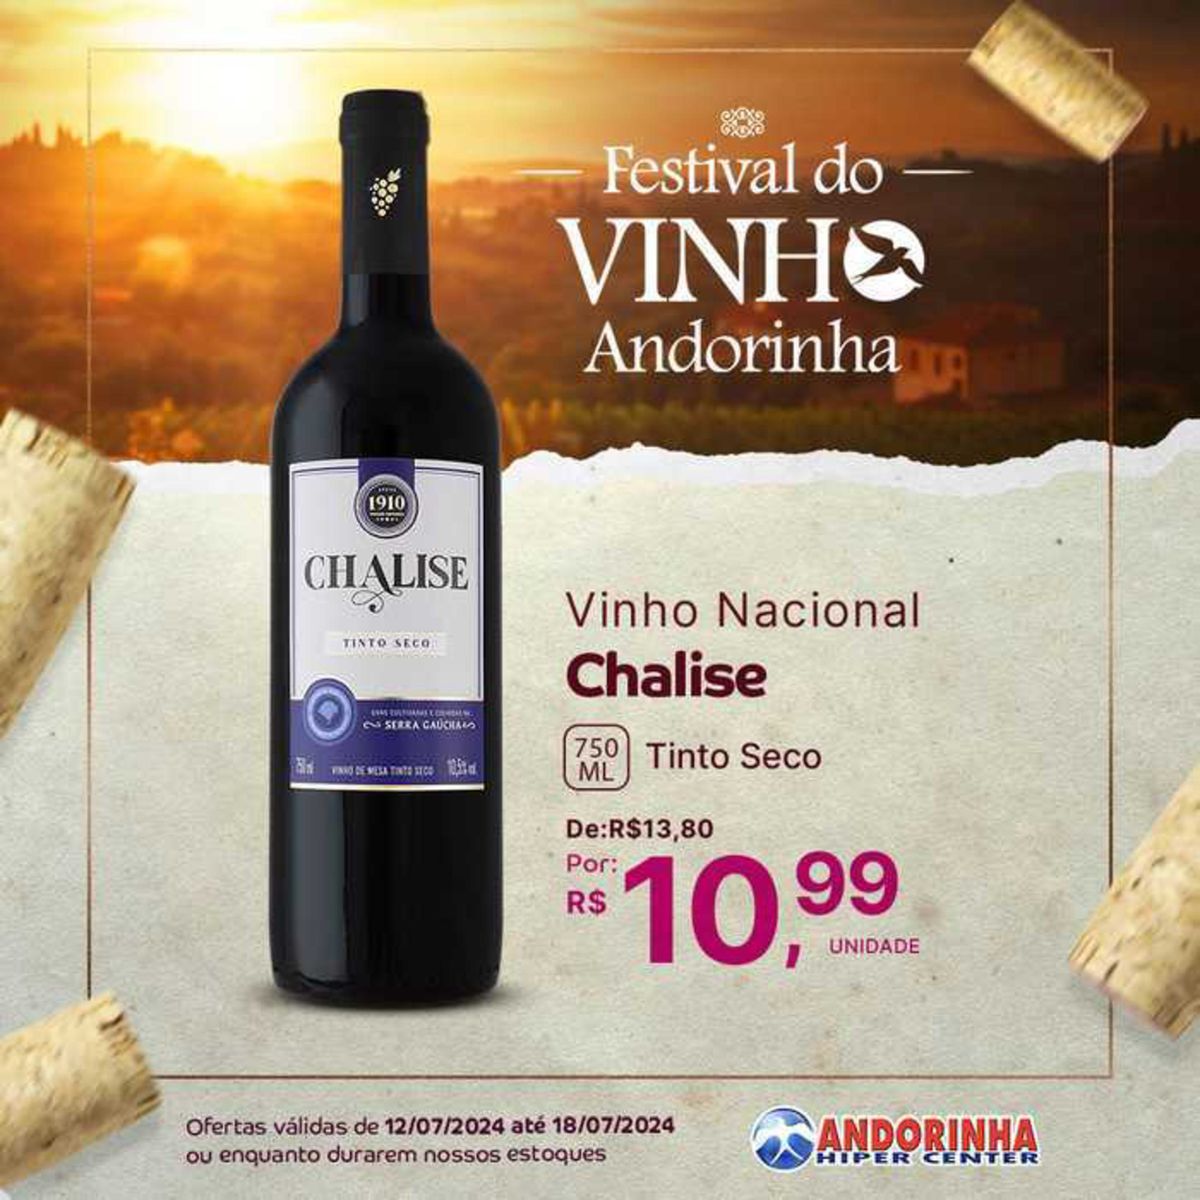 Vinho Nacional Chalise Tinto Seco em promoção